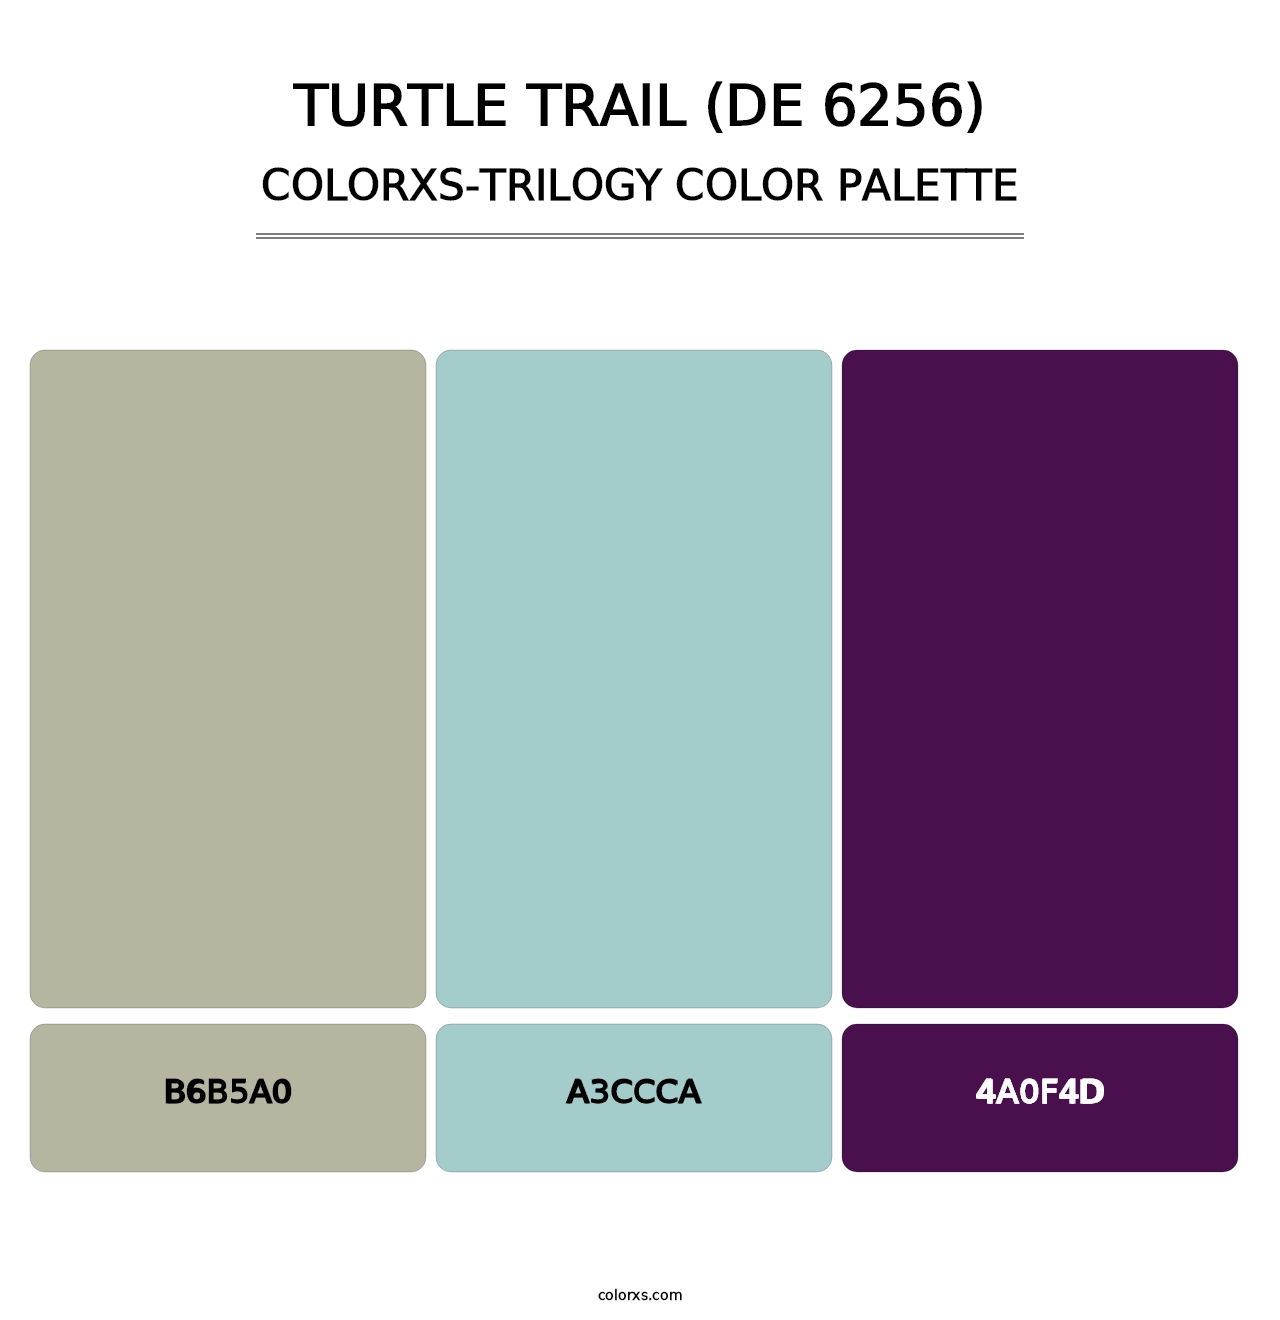 Turtle Trail (DE 6256) - Colorxs Trilogy Palette